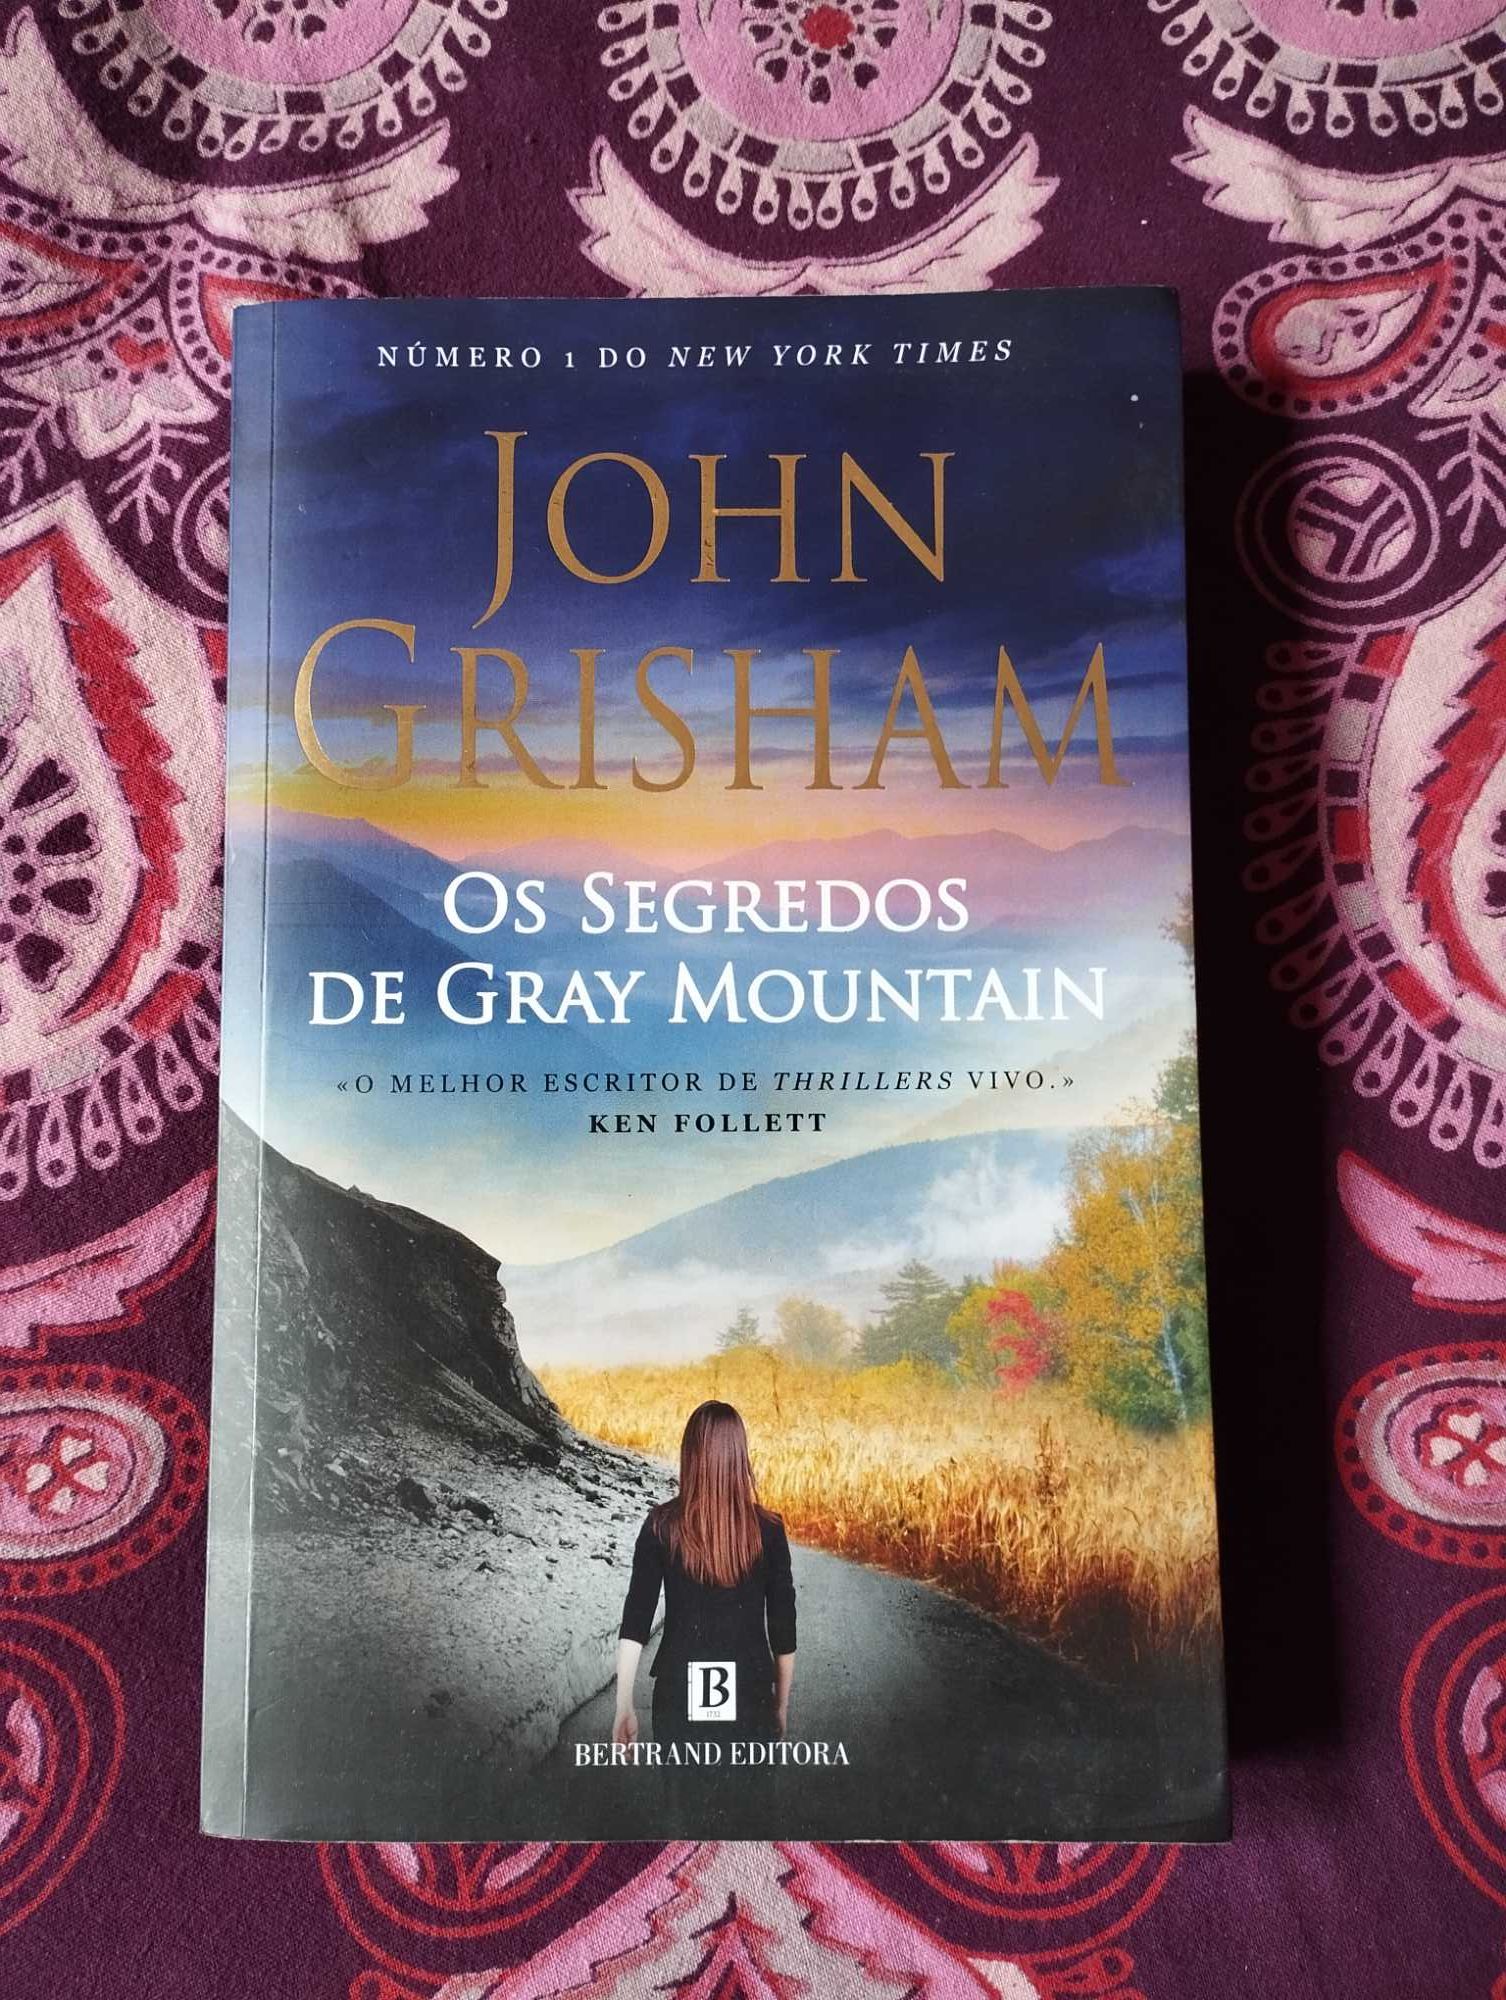 "Os Segredos de Gray Mountain"